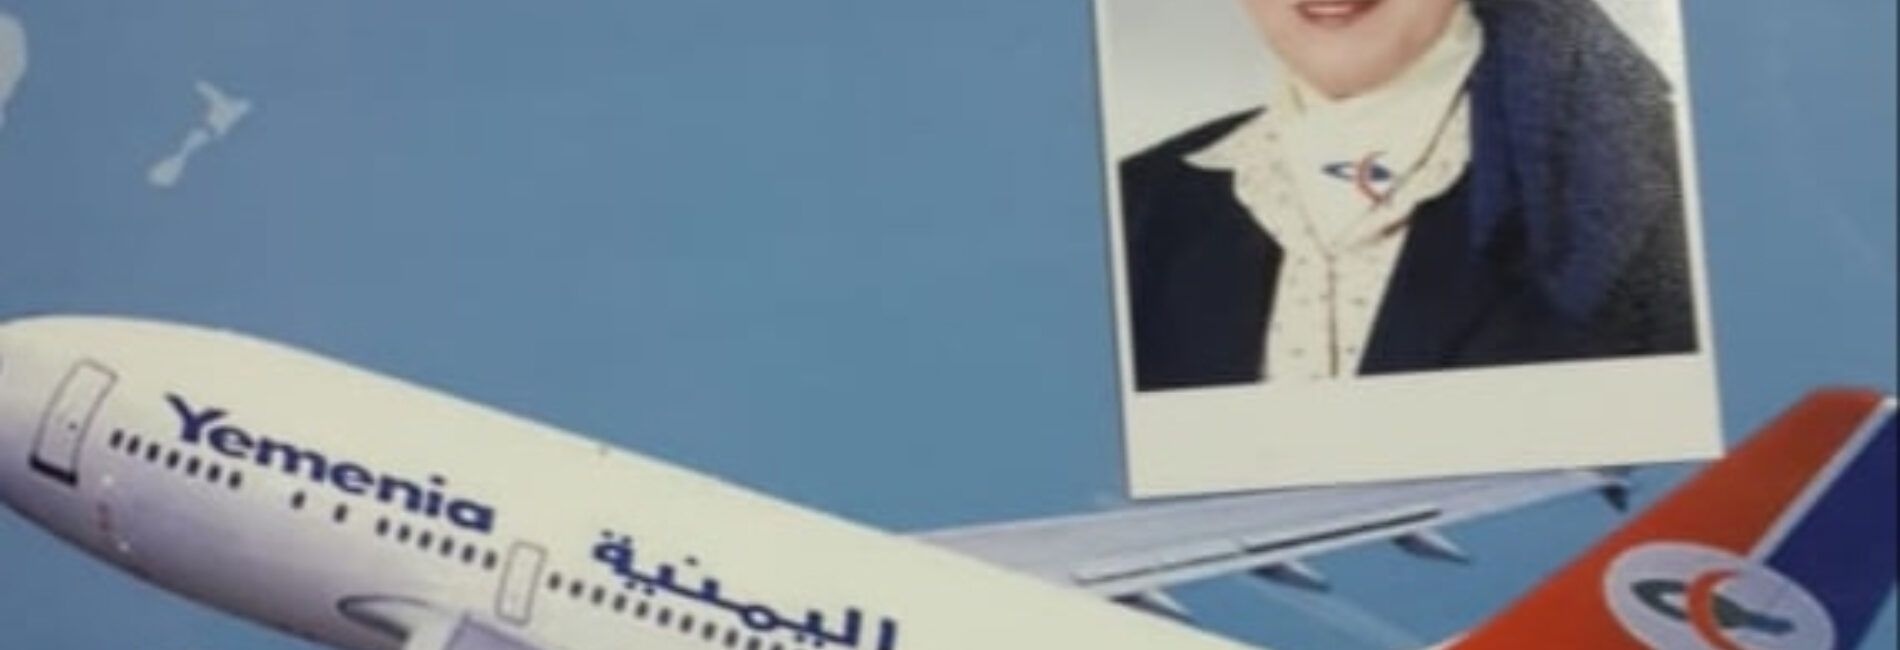 حصلت الخطوط الجوية اليمنية على عضوية اللجنة